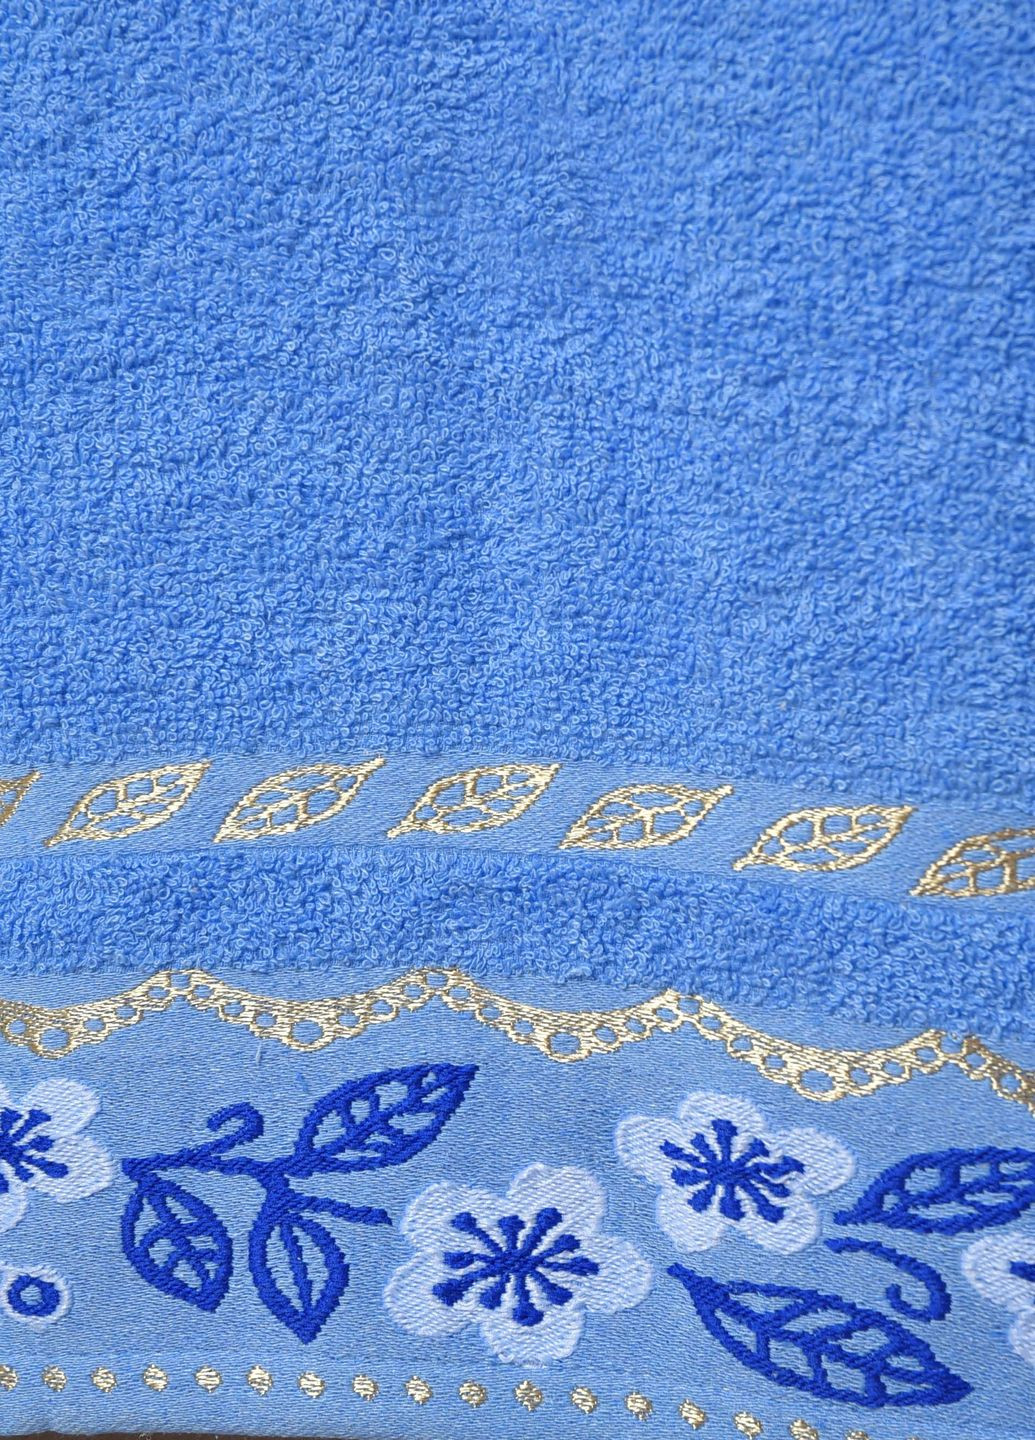 Let's Shop полотенце банное махровое синего цвета однотонный синий производство - Турция